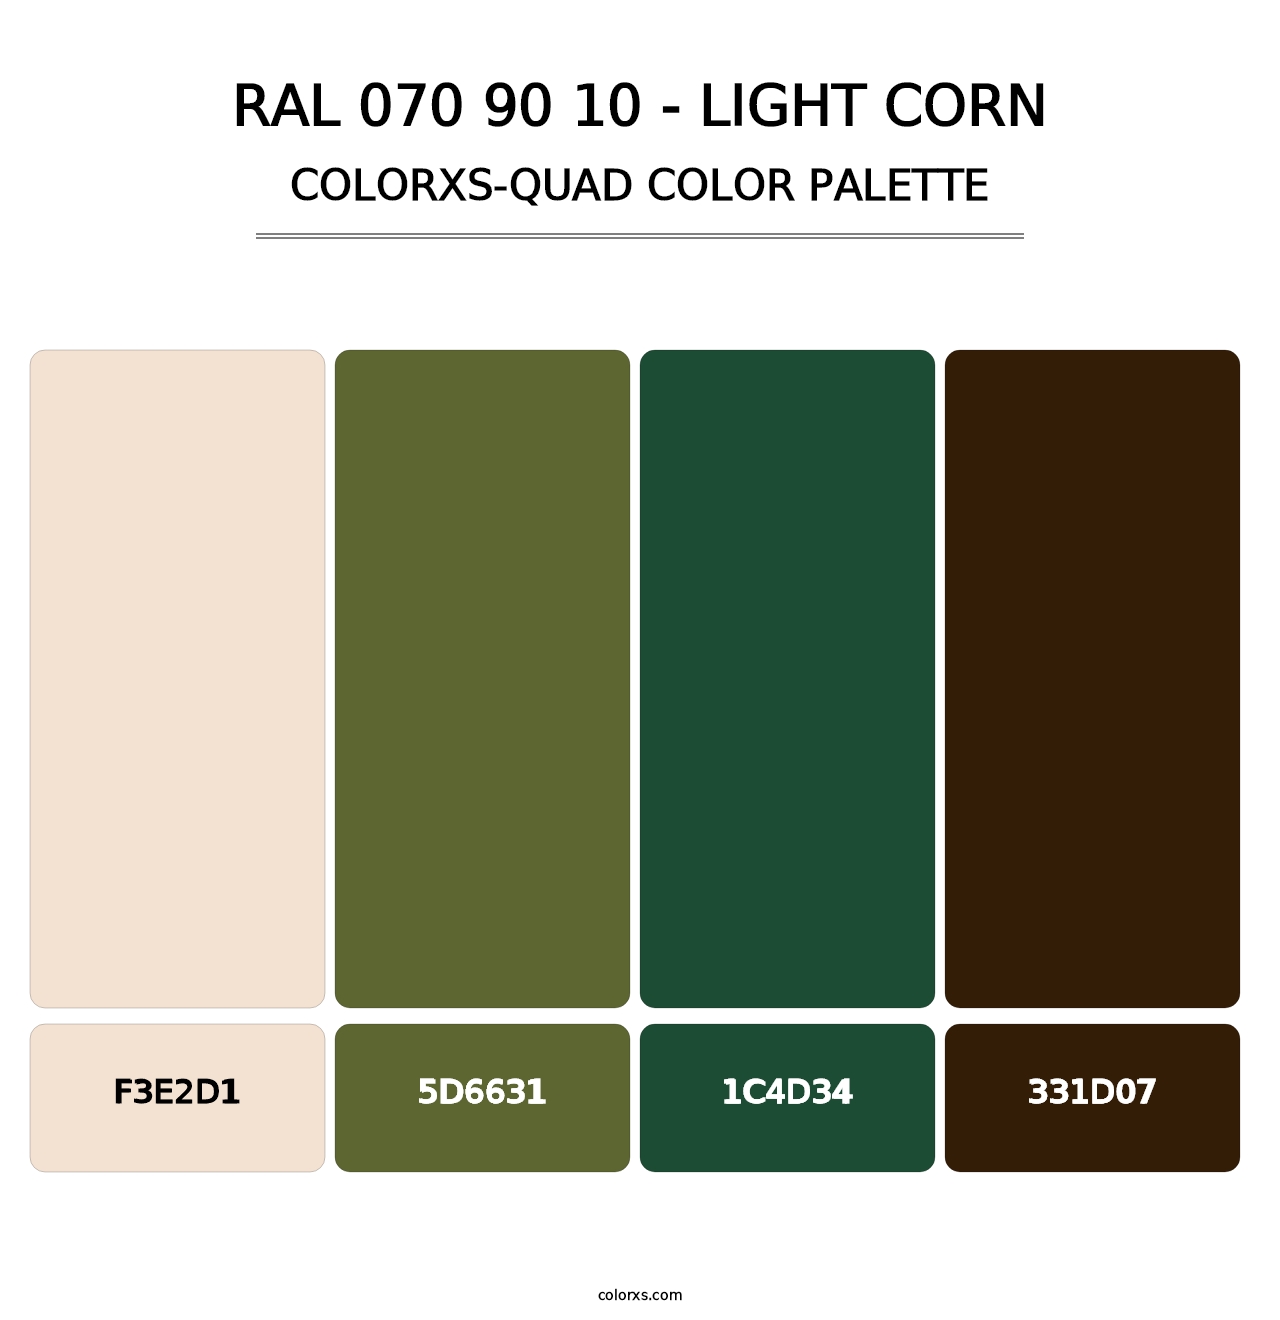 RAL 070 90 10 - Light Corn - Colorxs Quad Palette